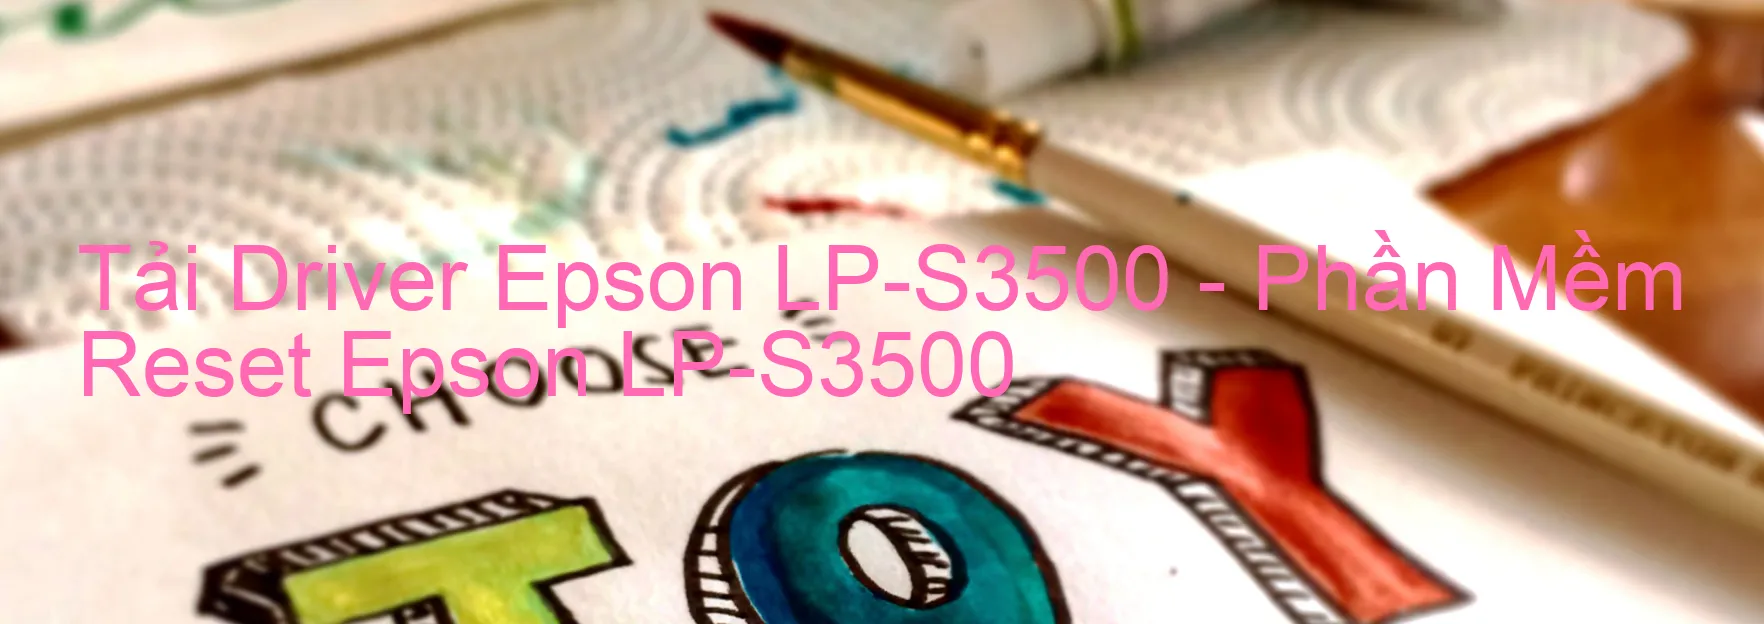 Driver Epson LP-S3500, Phần Mềm Reset Epson LP-S3500